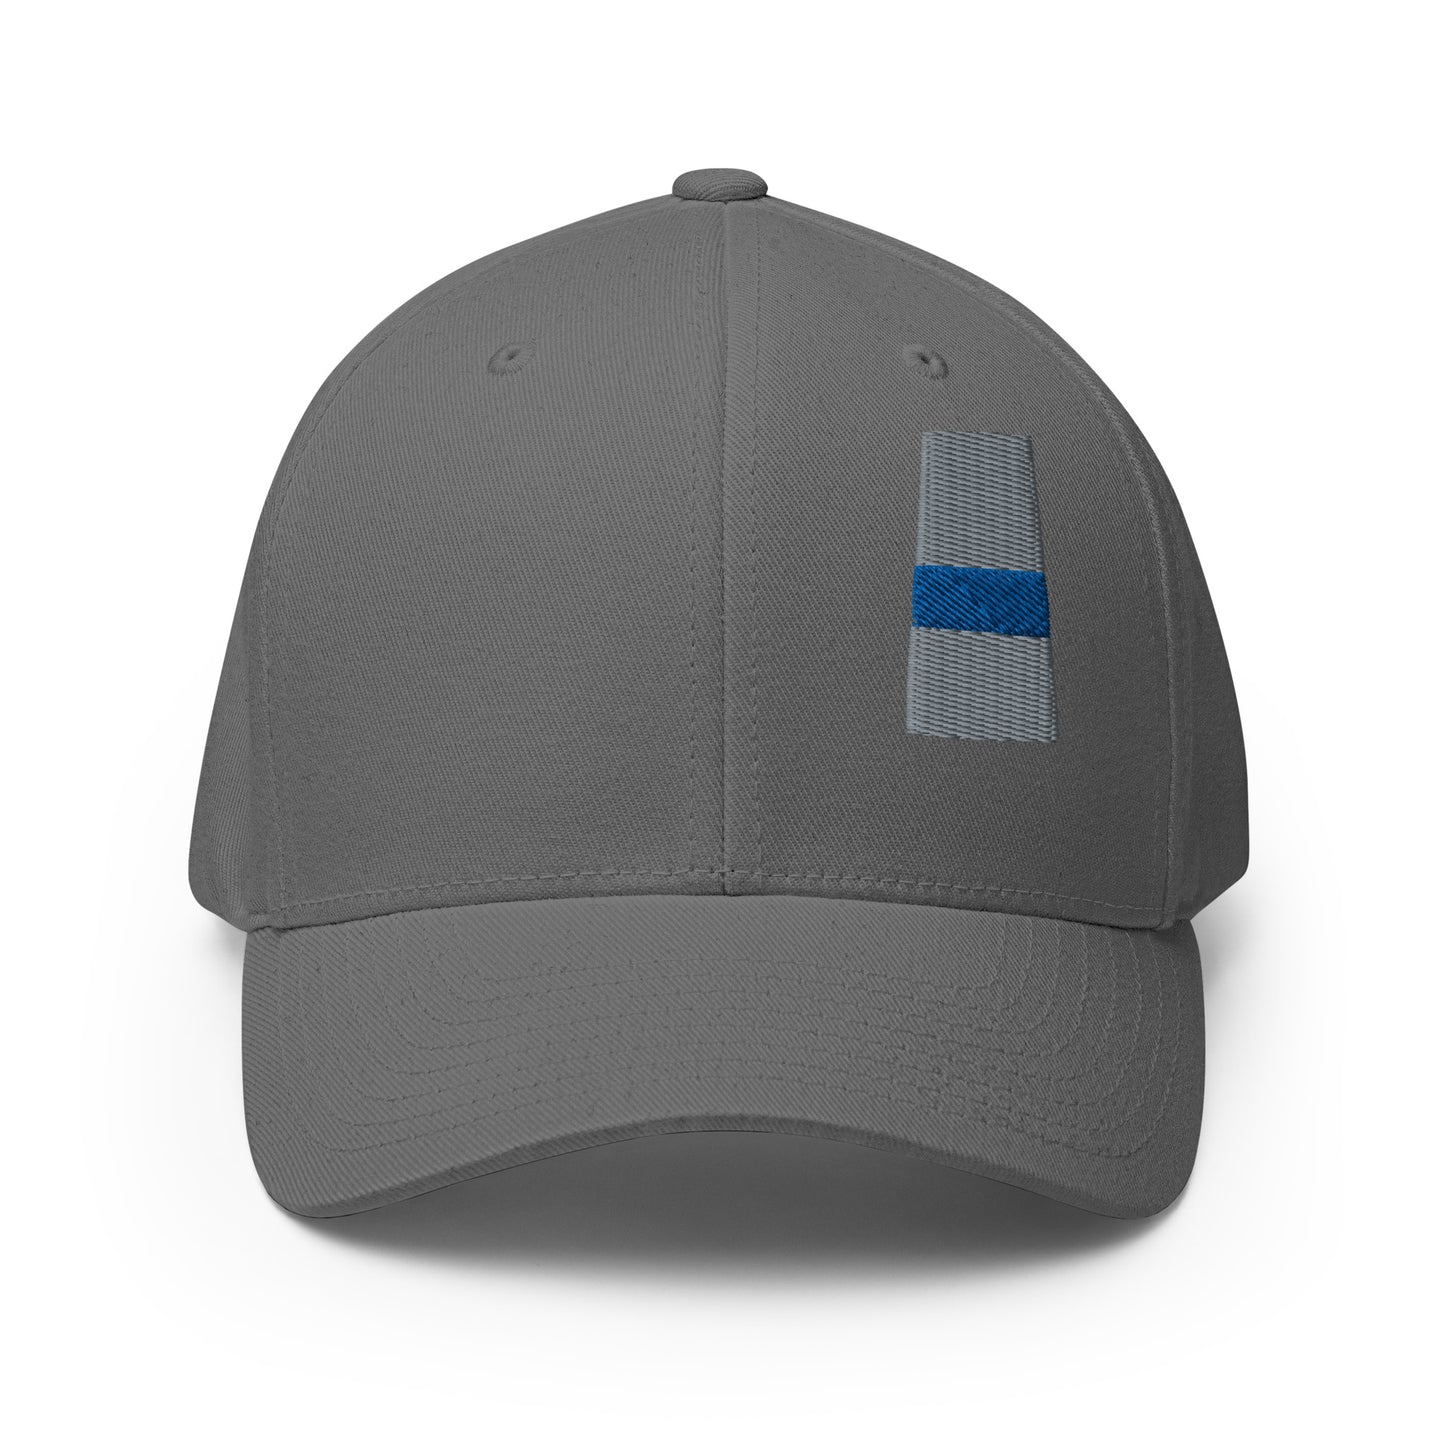 Saskatchewan (SK) Thin Blue Line Flexfit Ball Cap